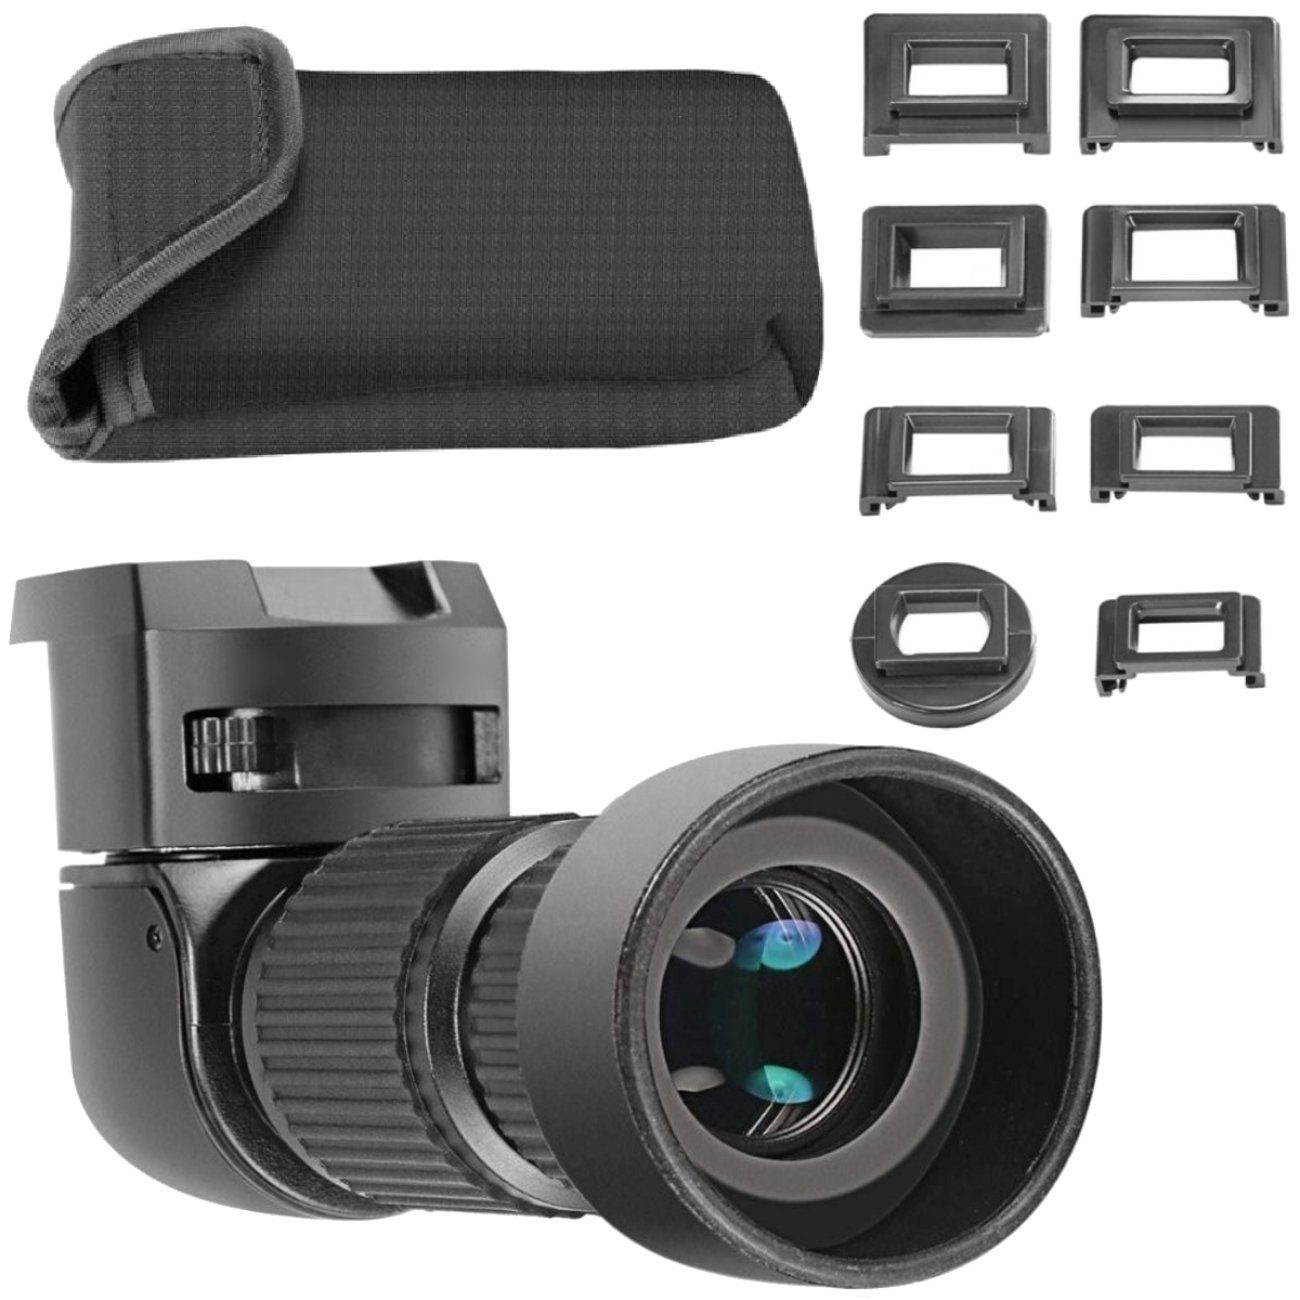 Impulsfoto Aufstecksucher Winkelsucher Viewfinder 1,0 - 2,0-fach für DSLR Kameras